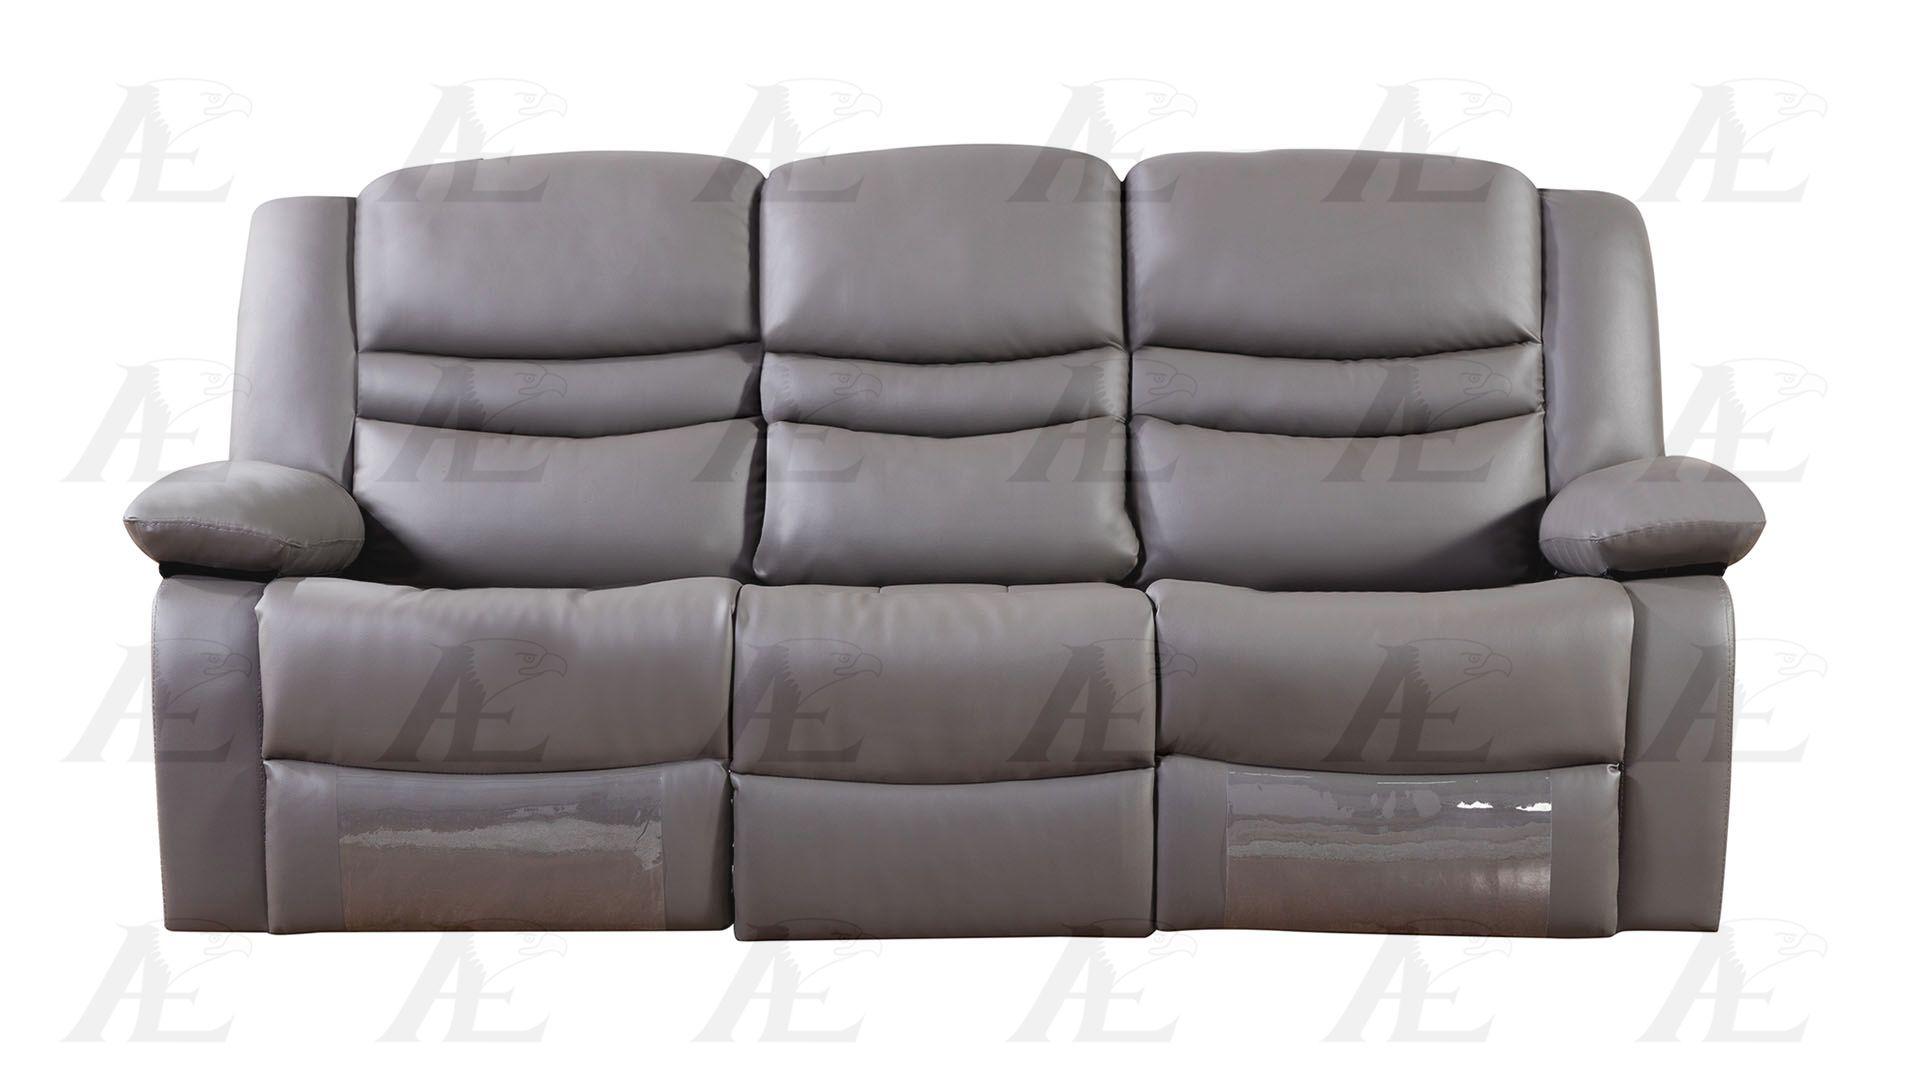 

    
American Eagle Furniture AE-D823-DG Sofa Dark Gray AE-D823-DG-Sofa
